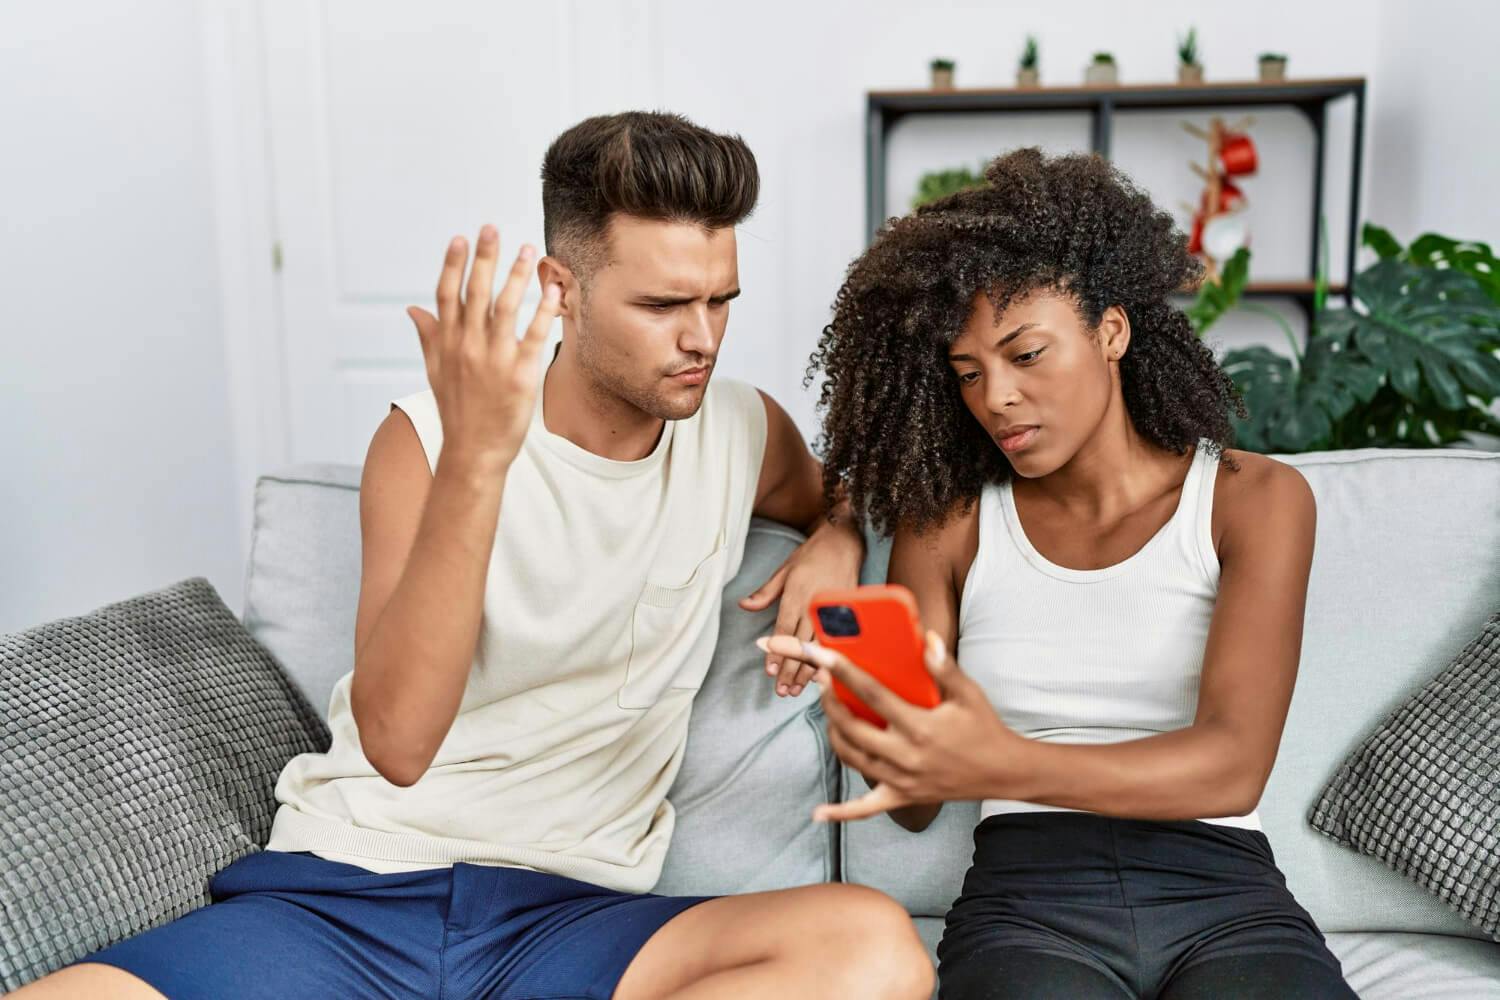 Una pareja discuta al encontrar señales de infidelidad en redes sociales.